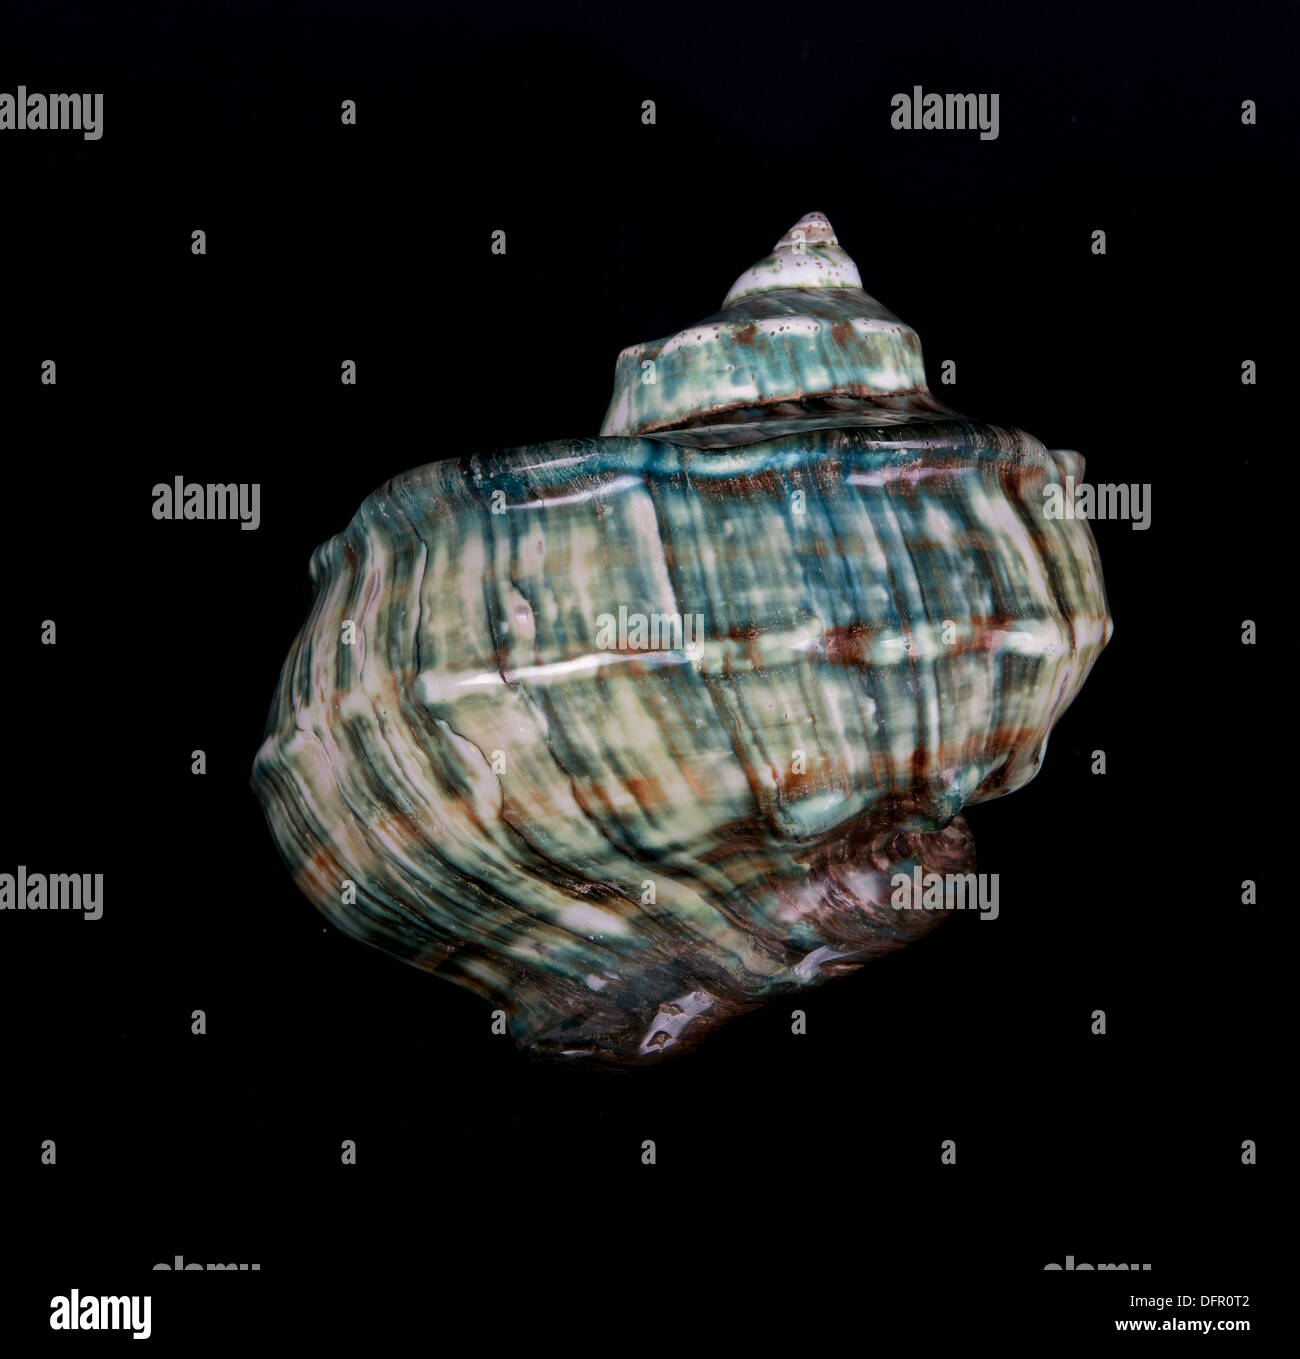 Blaue Muschel auf dunklem Hintergrund, Ocean marine Muschel Nahaufnahme isoliert in dunklem Hintergrund, marine Muschel Deko-Objekt Stockfoto